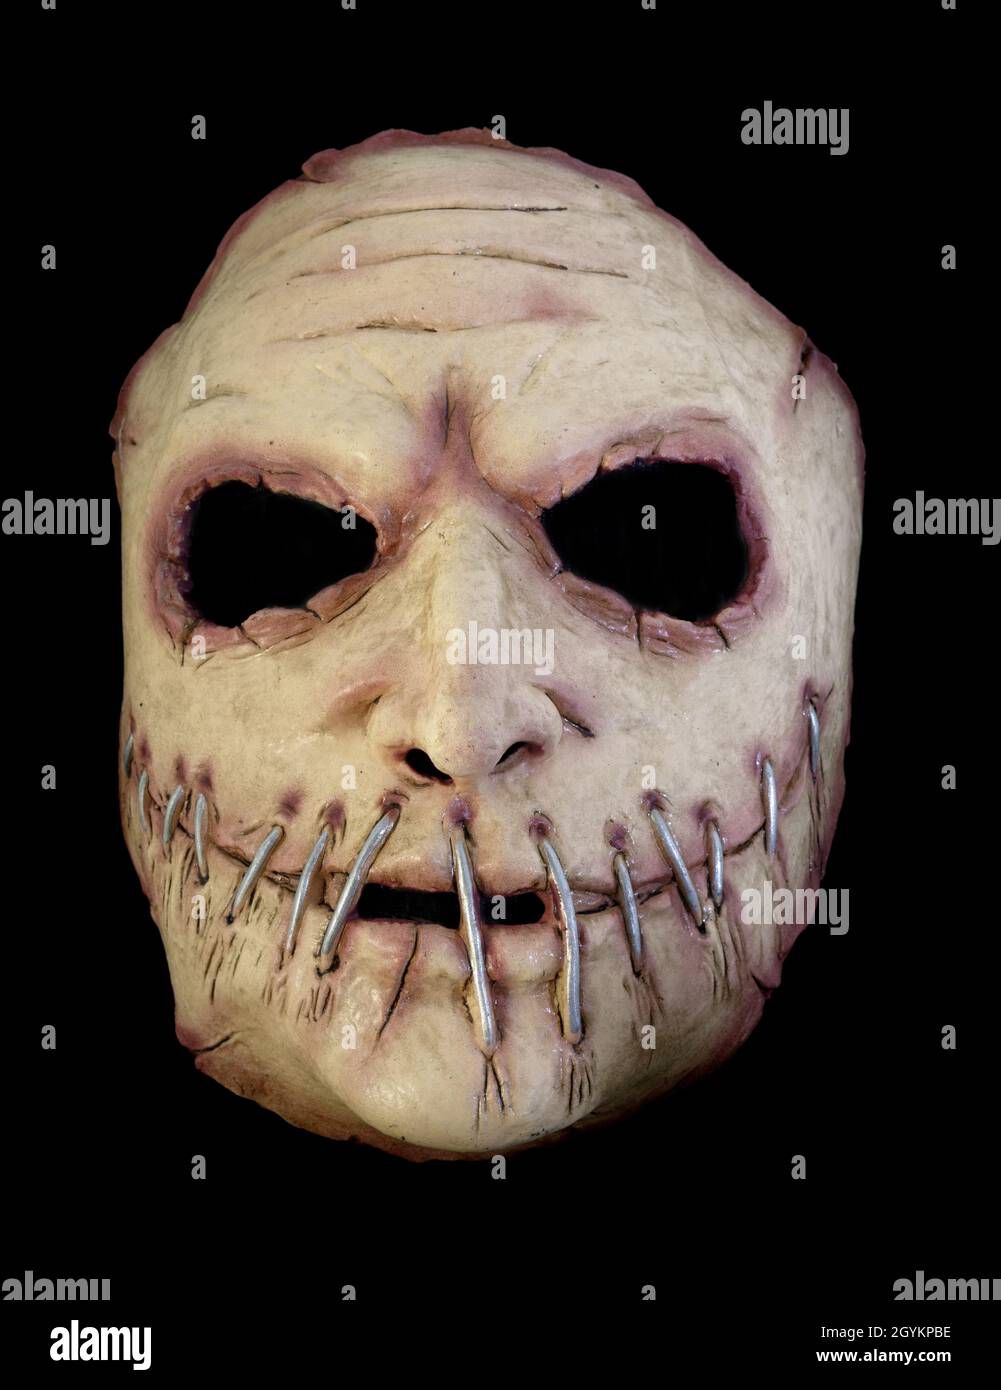 Masque Killer série avec une ouverture large bouche cousue isolée contre fond noir Banque D'Images